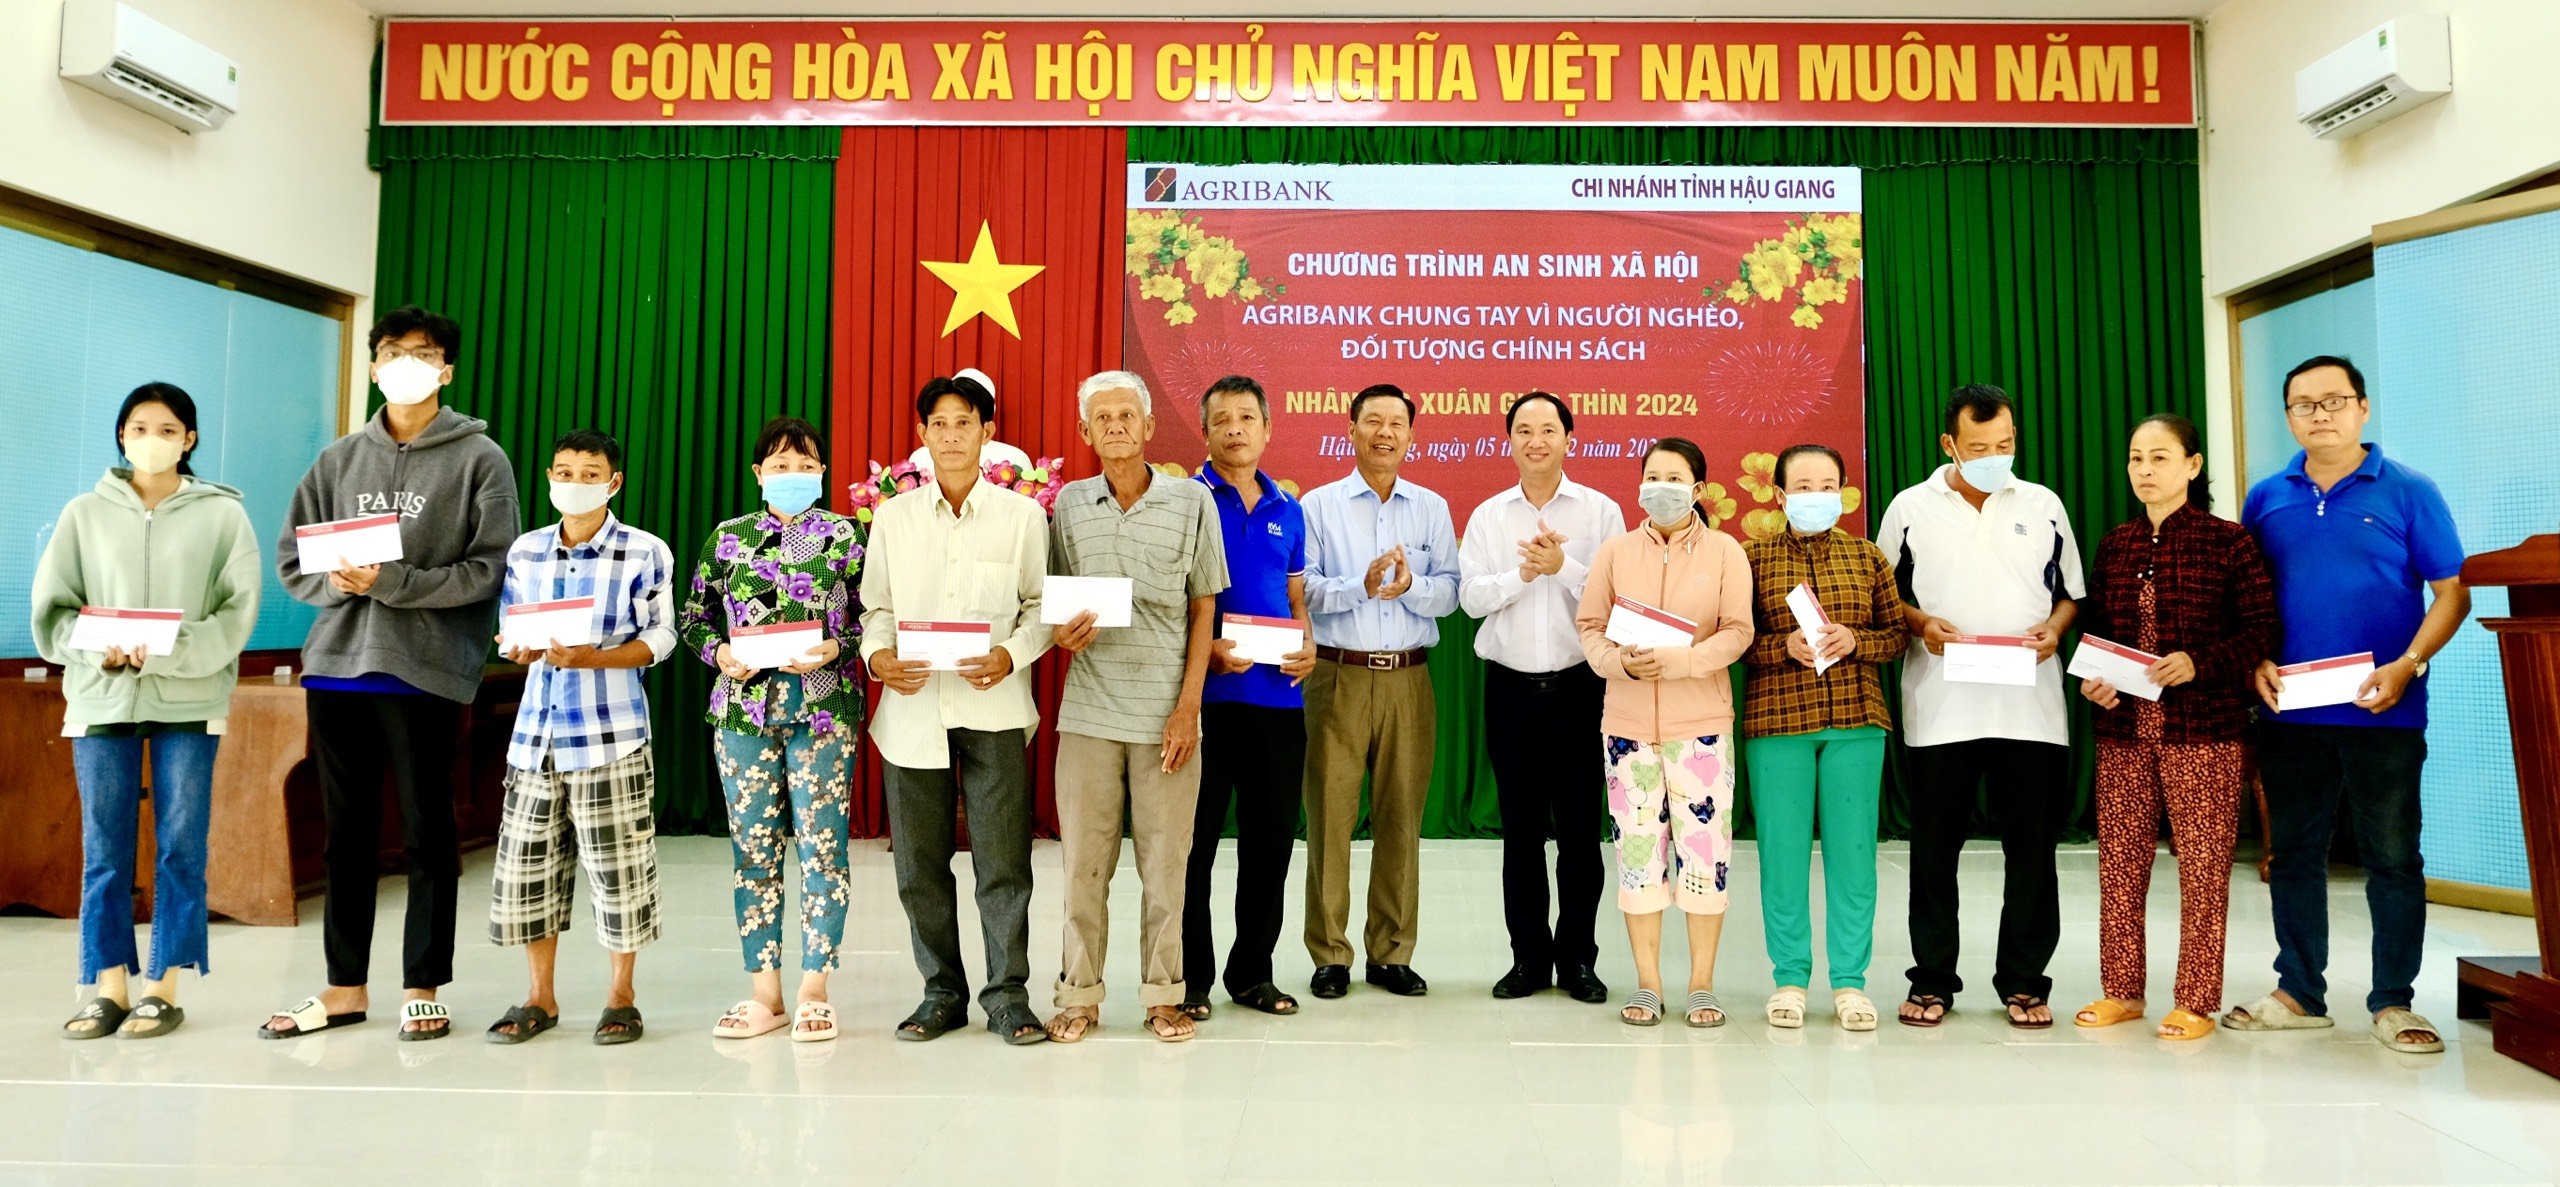 Agribank Chi nhánh tỉnh Hậu Giang chung tay vì người nghèo Xuân Giáp Thìn 2024- Ảnh 1.